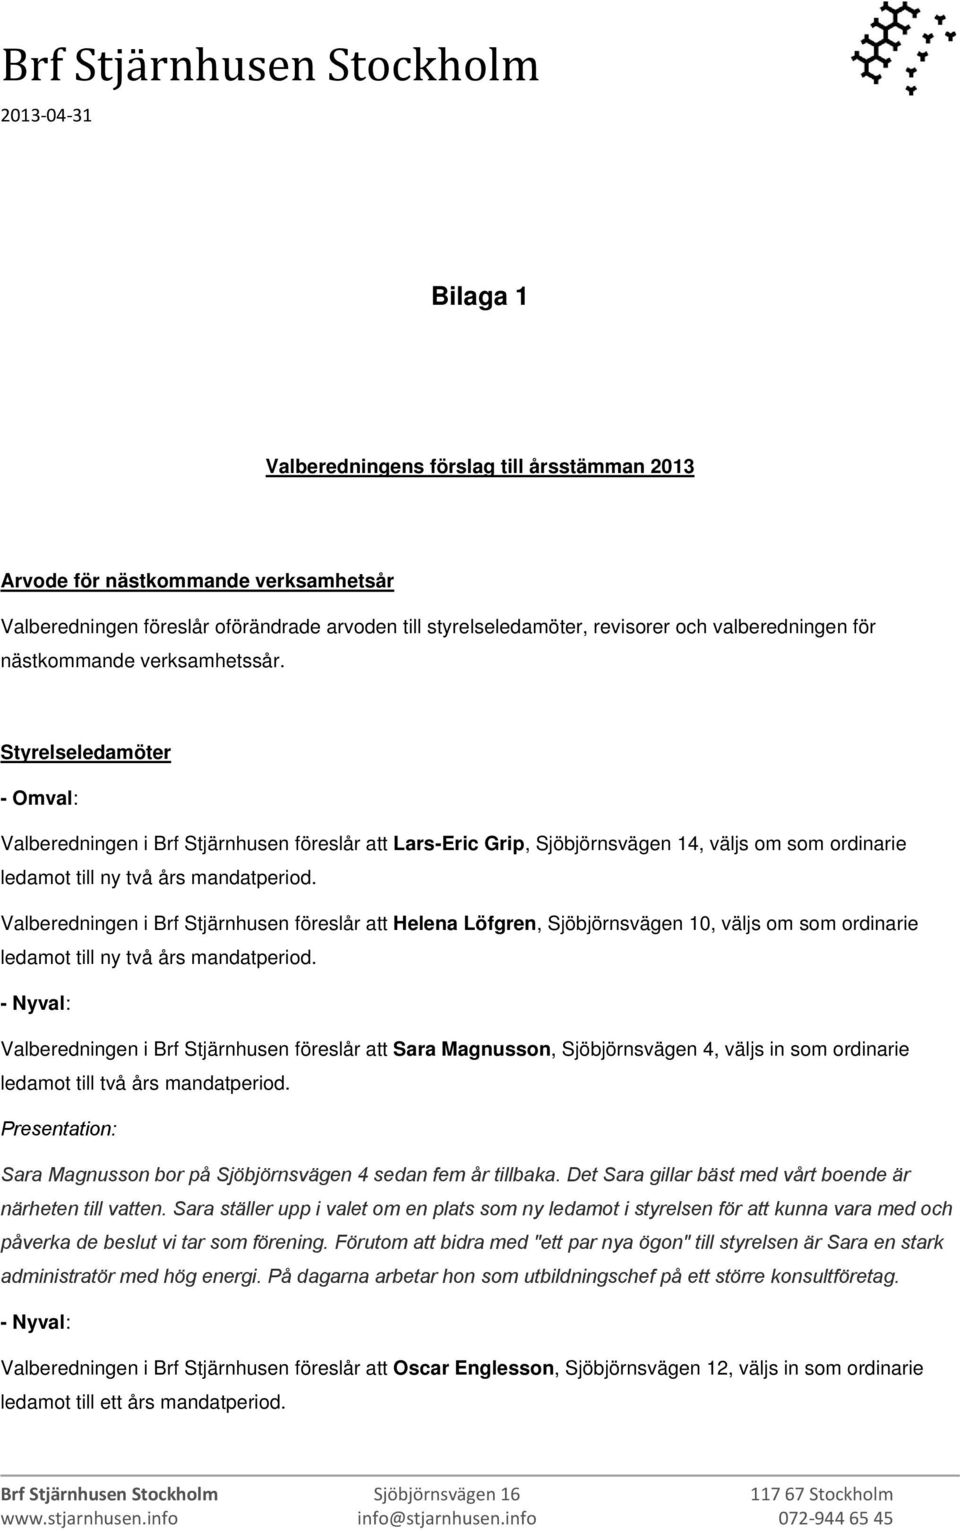 Valberedningen i Brf Stjärnhusen föreslår att Helena Löfgren, Sjöbjörnsvägen 10, väljs om som ordinarie ledamot till ny två års mandatperiod.